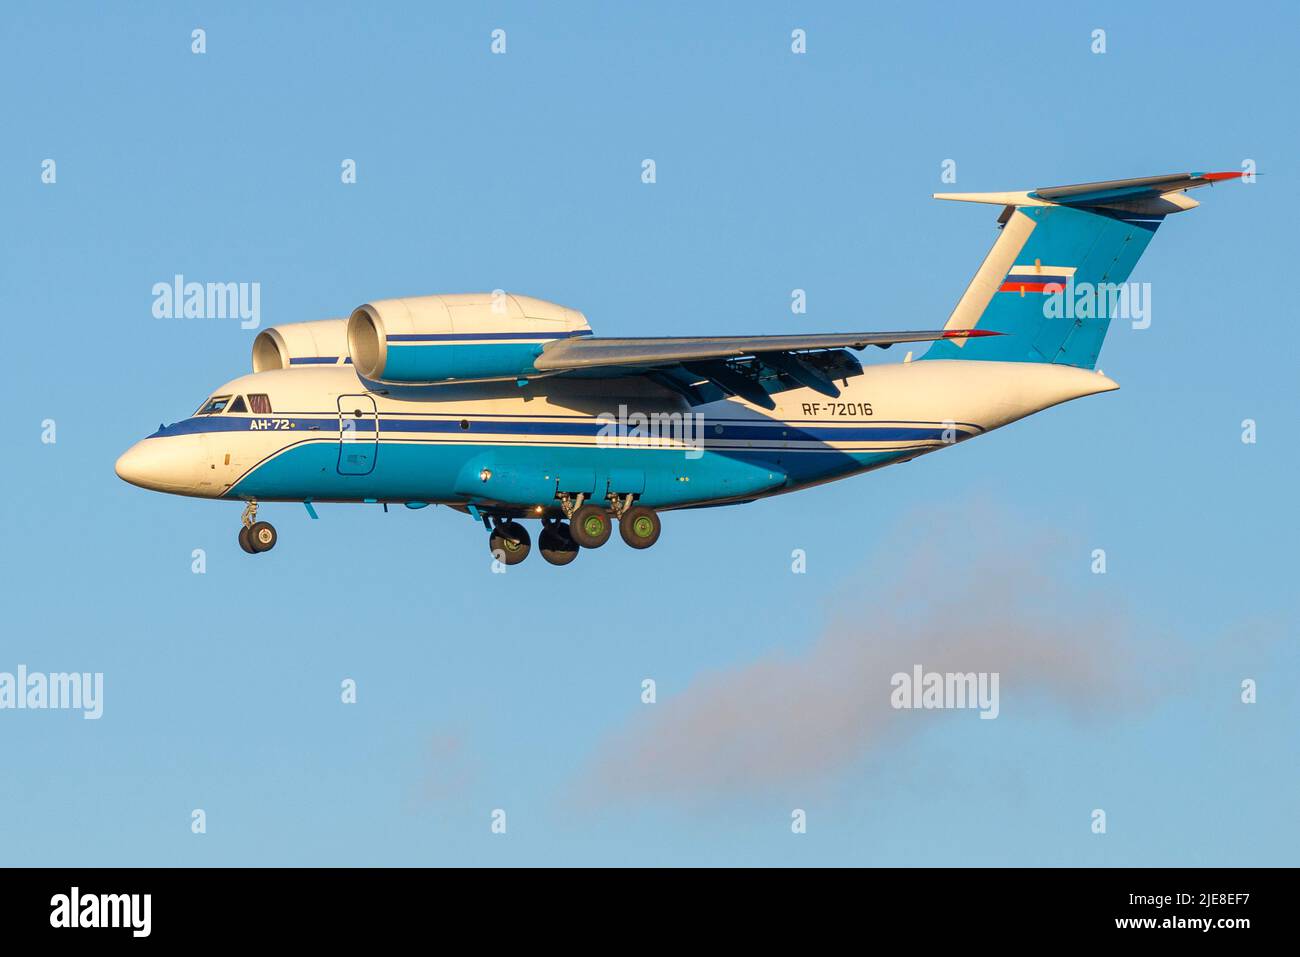 SAINT-PÉTERSBOURG, RUSSIE - 25 OCTOBRE 2018 : avion an-72 (RF-72016) du service fédéral des frontières de la Russie en vol Banque D'Images